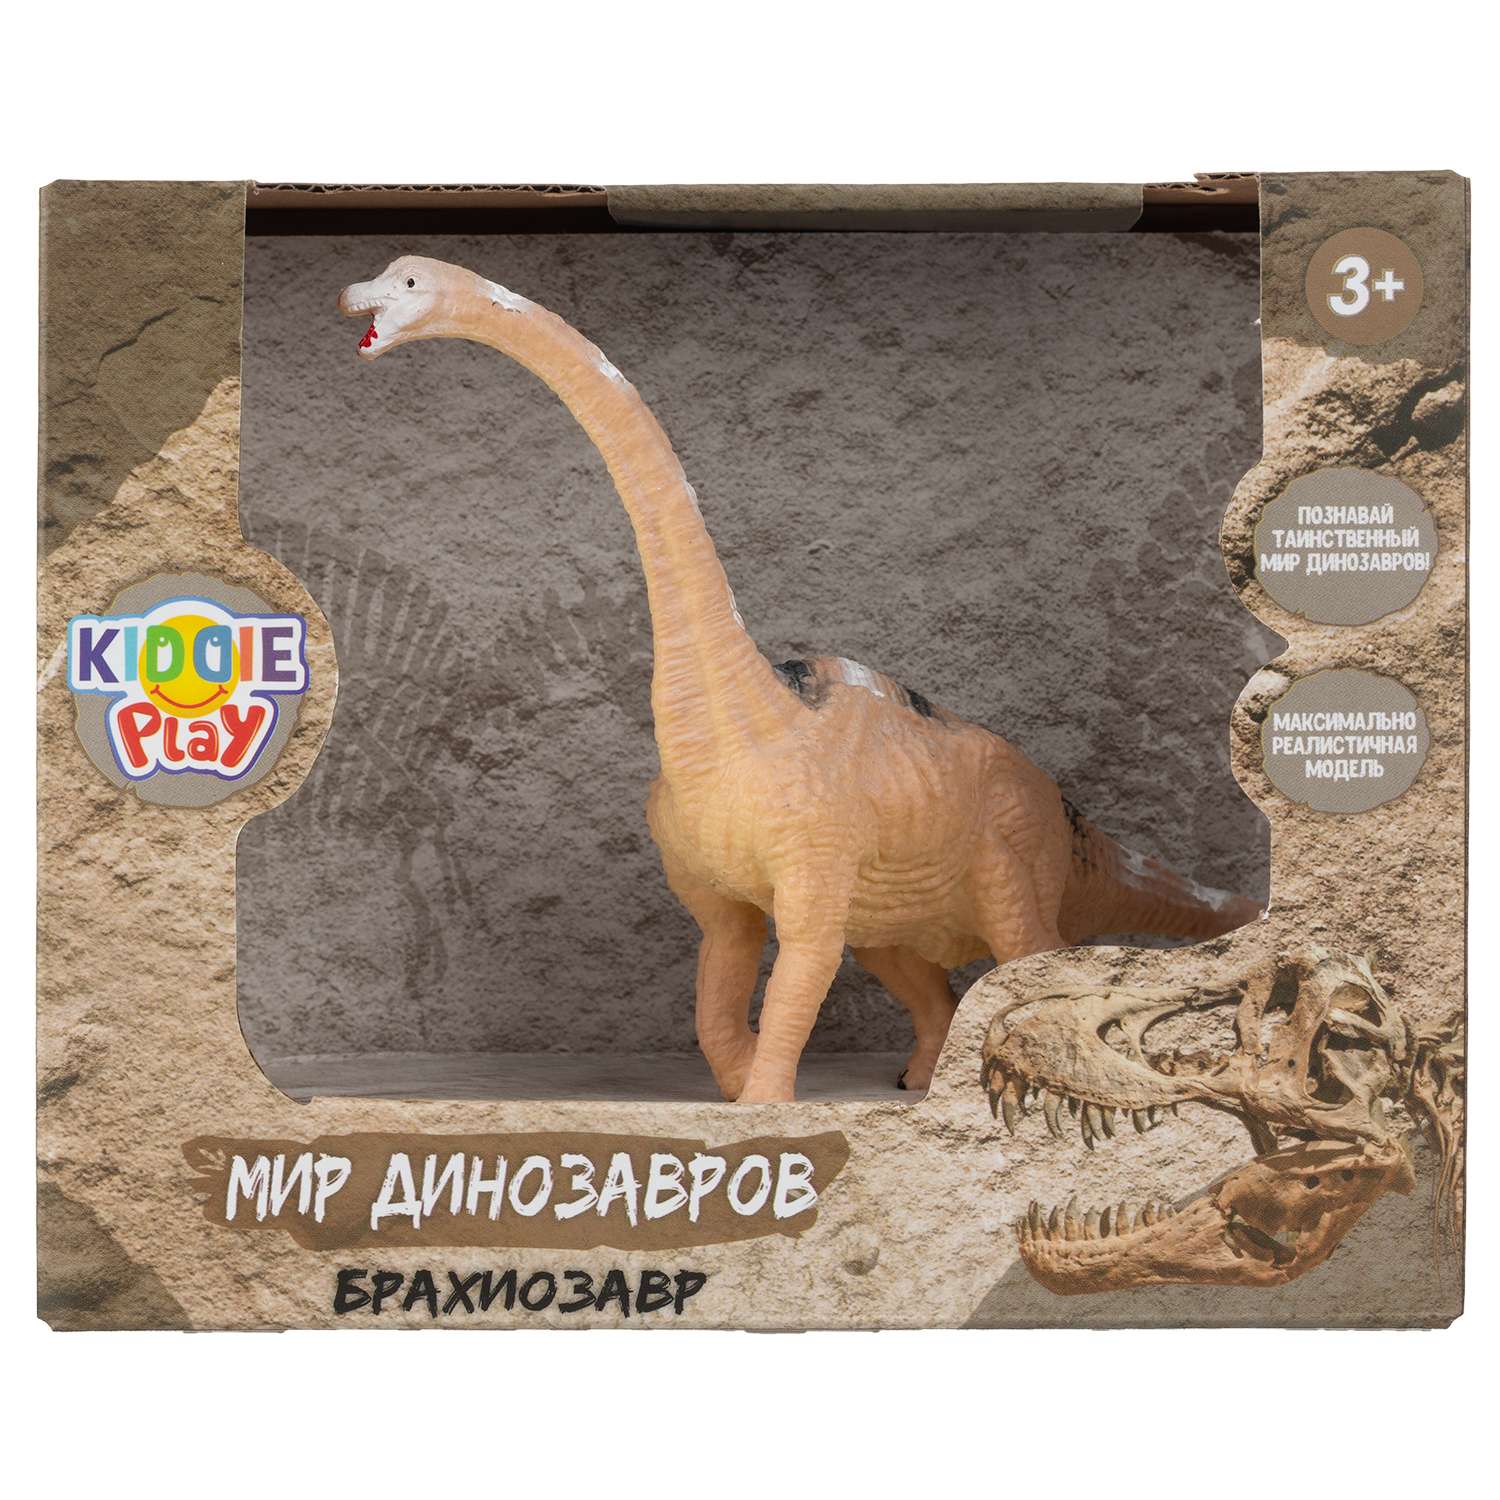 Игрушка KiddiePlay Брахиозавр 12614 - фото 4